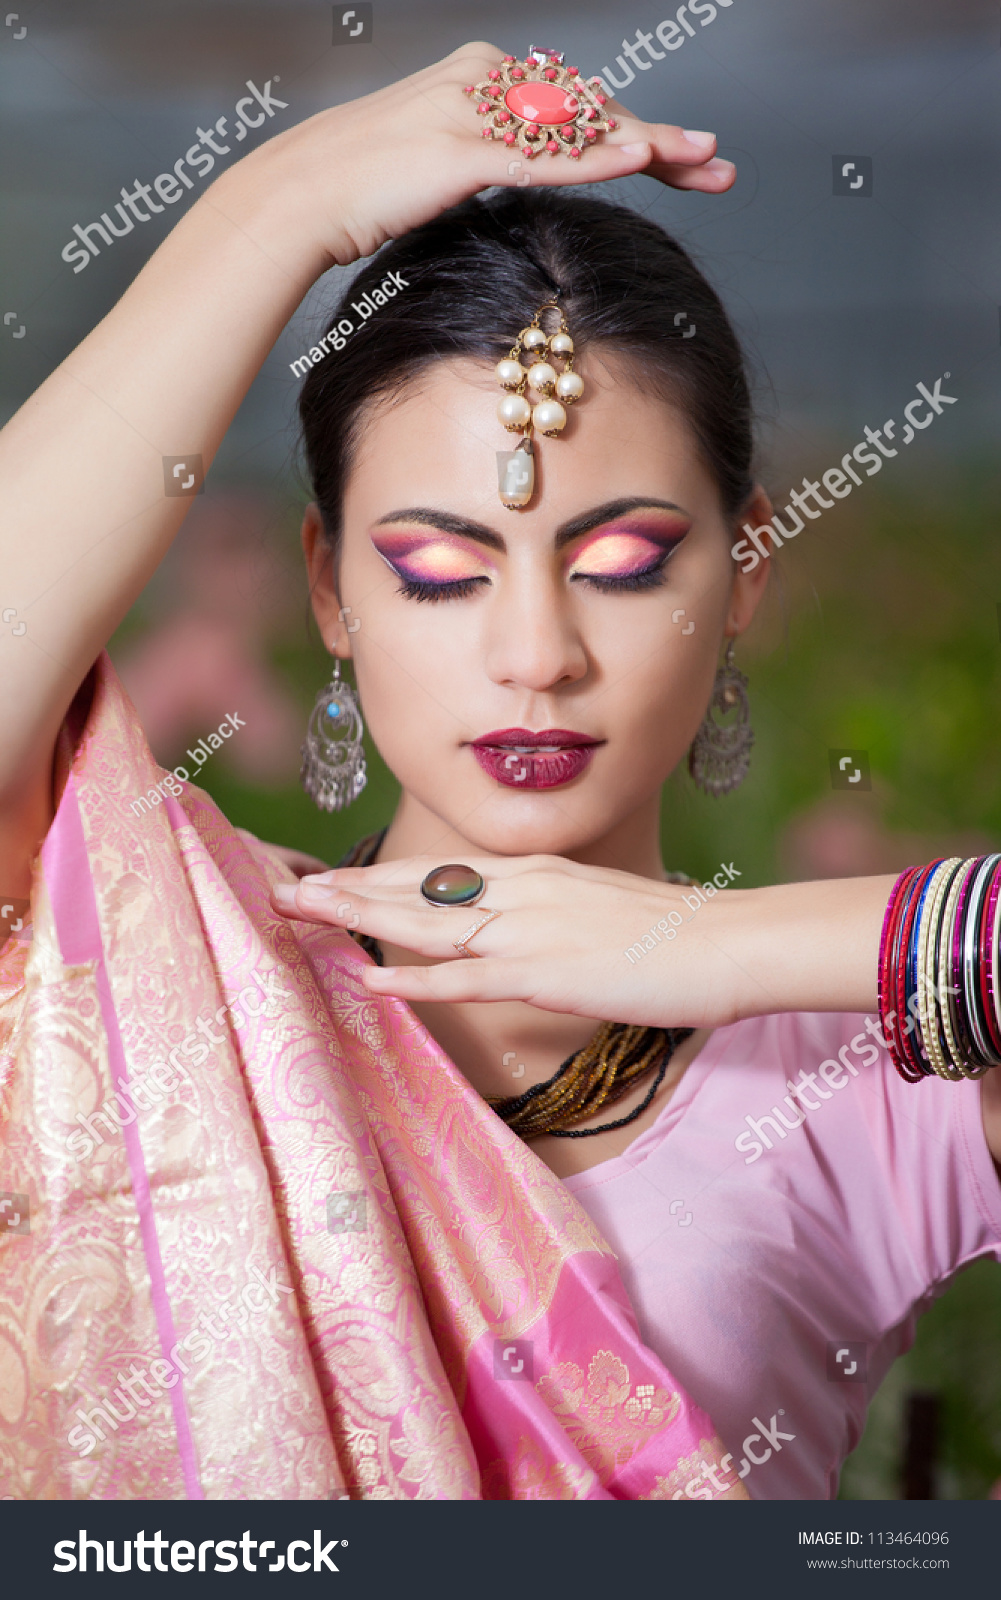 Beautiful Indian Girl Indian National Dress Foto De Stock 113464096 Shutterstock